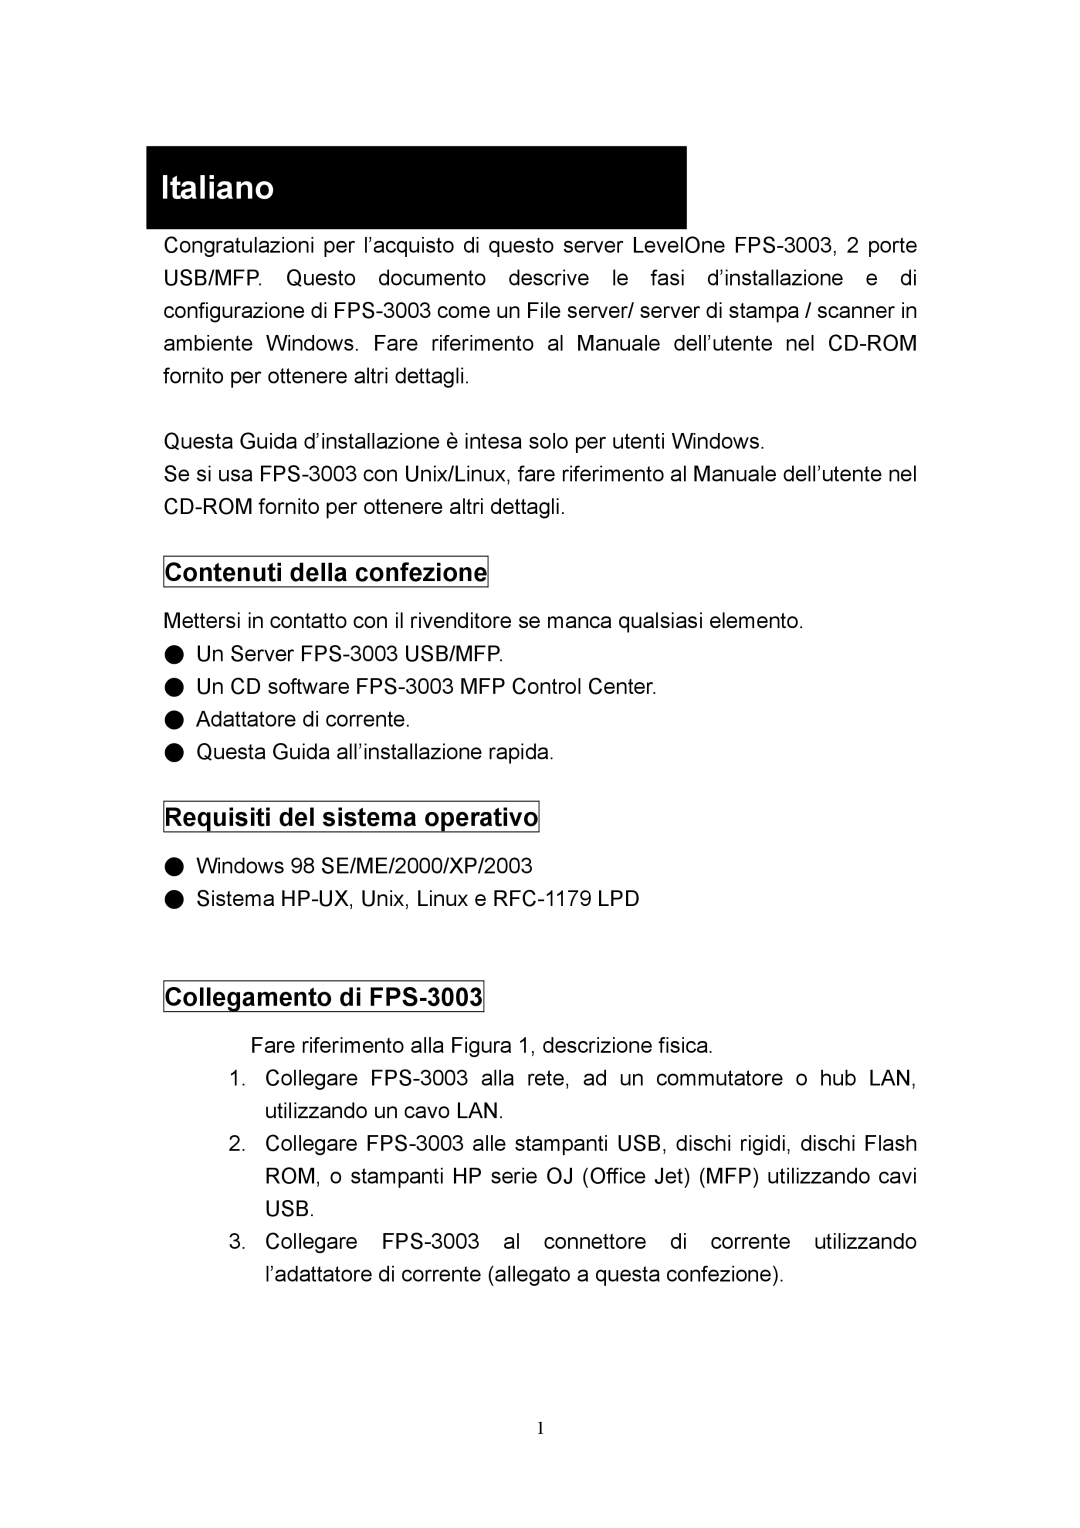 LevelOne manual Italiano, Contenuti della confezione, Requisiti del sistema operativo, Collegamento di FPS-3003 